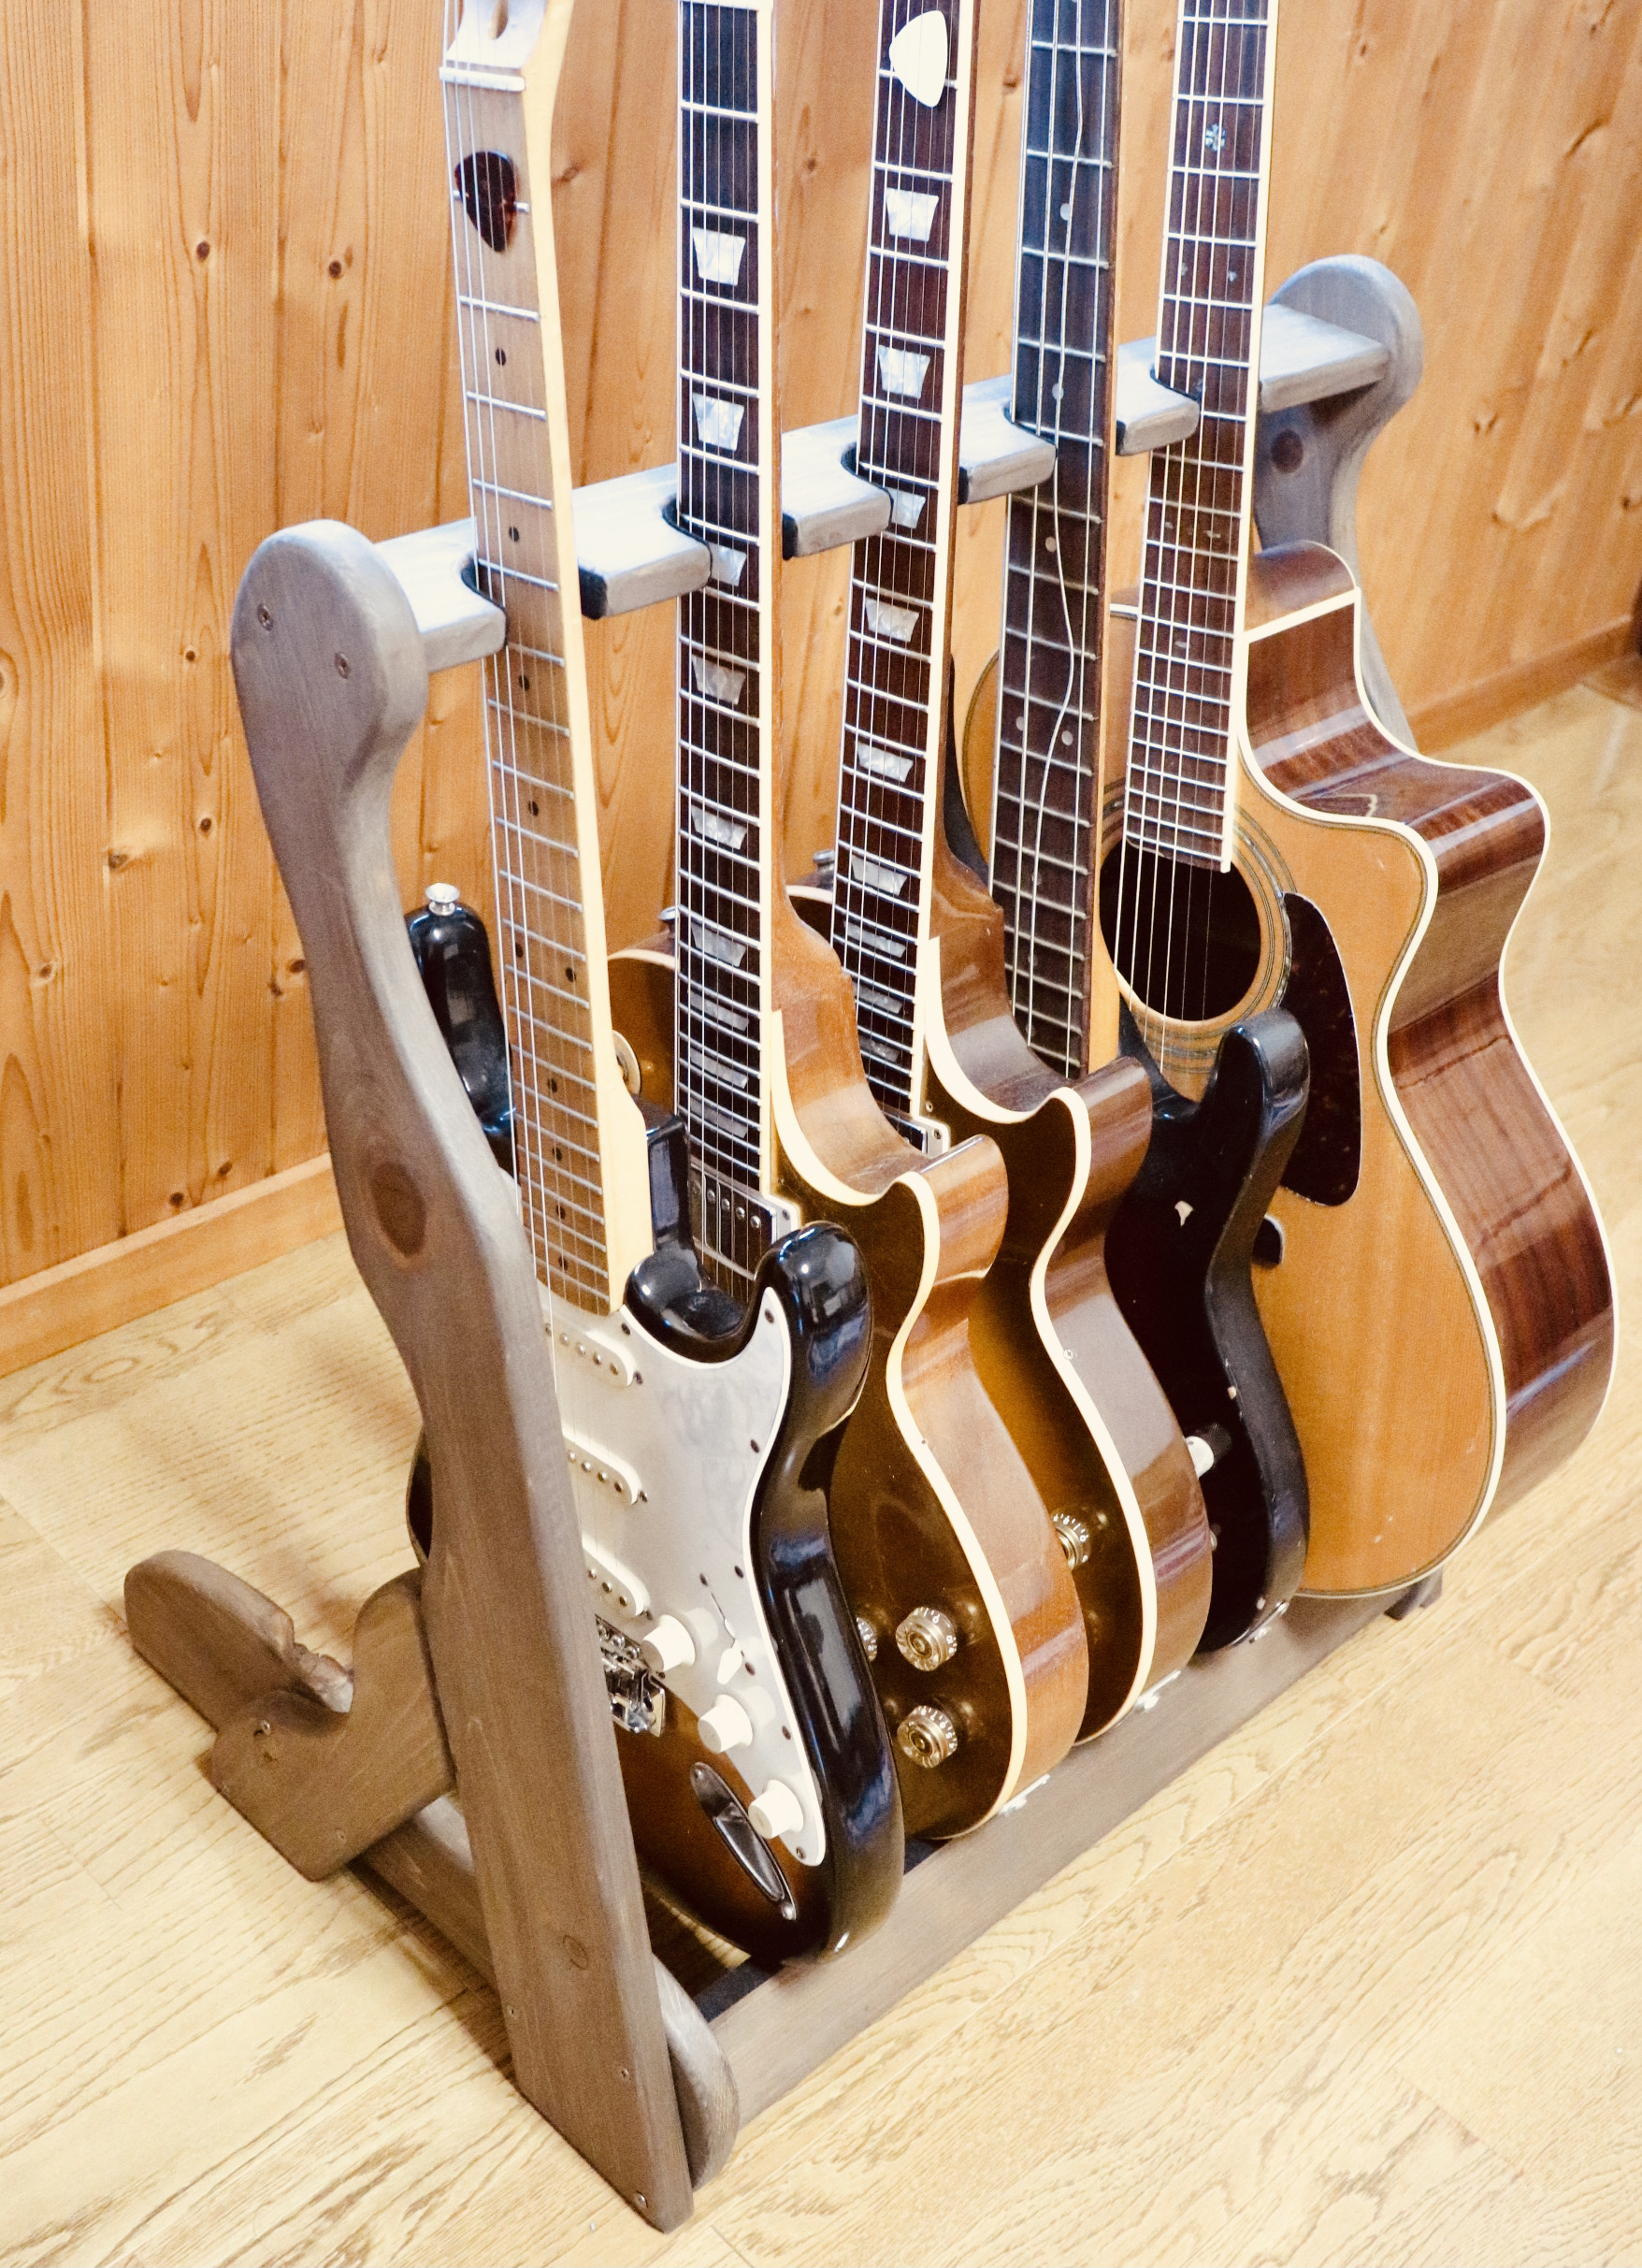 24時間以内に発送 手作り木工 木製ギタースタンド チーク ５本掛け Iichi ハンドメイド クラフト作品 手仕事品の通販